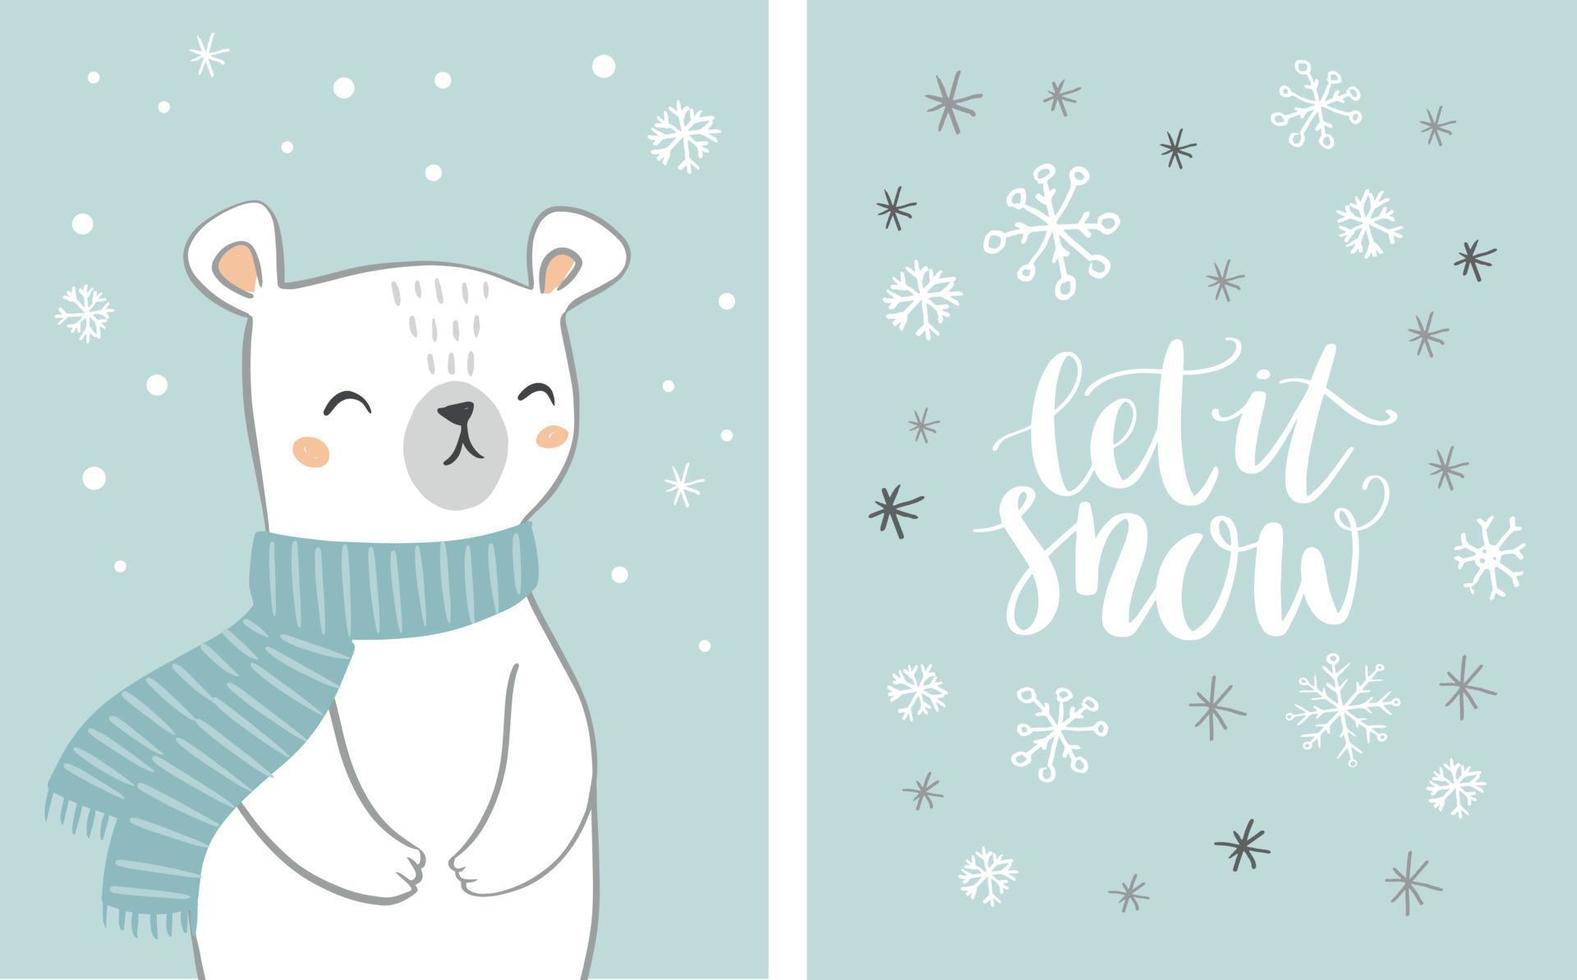 schattige hand getekende ijsbeer kaartenset met handgeschreven tekst laat het sneeuwen op besneeuwde achtergrond. beer karakter met sneeuwvlokken. kerst ontwerp. vector